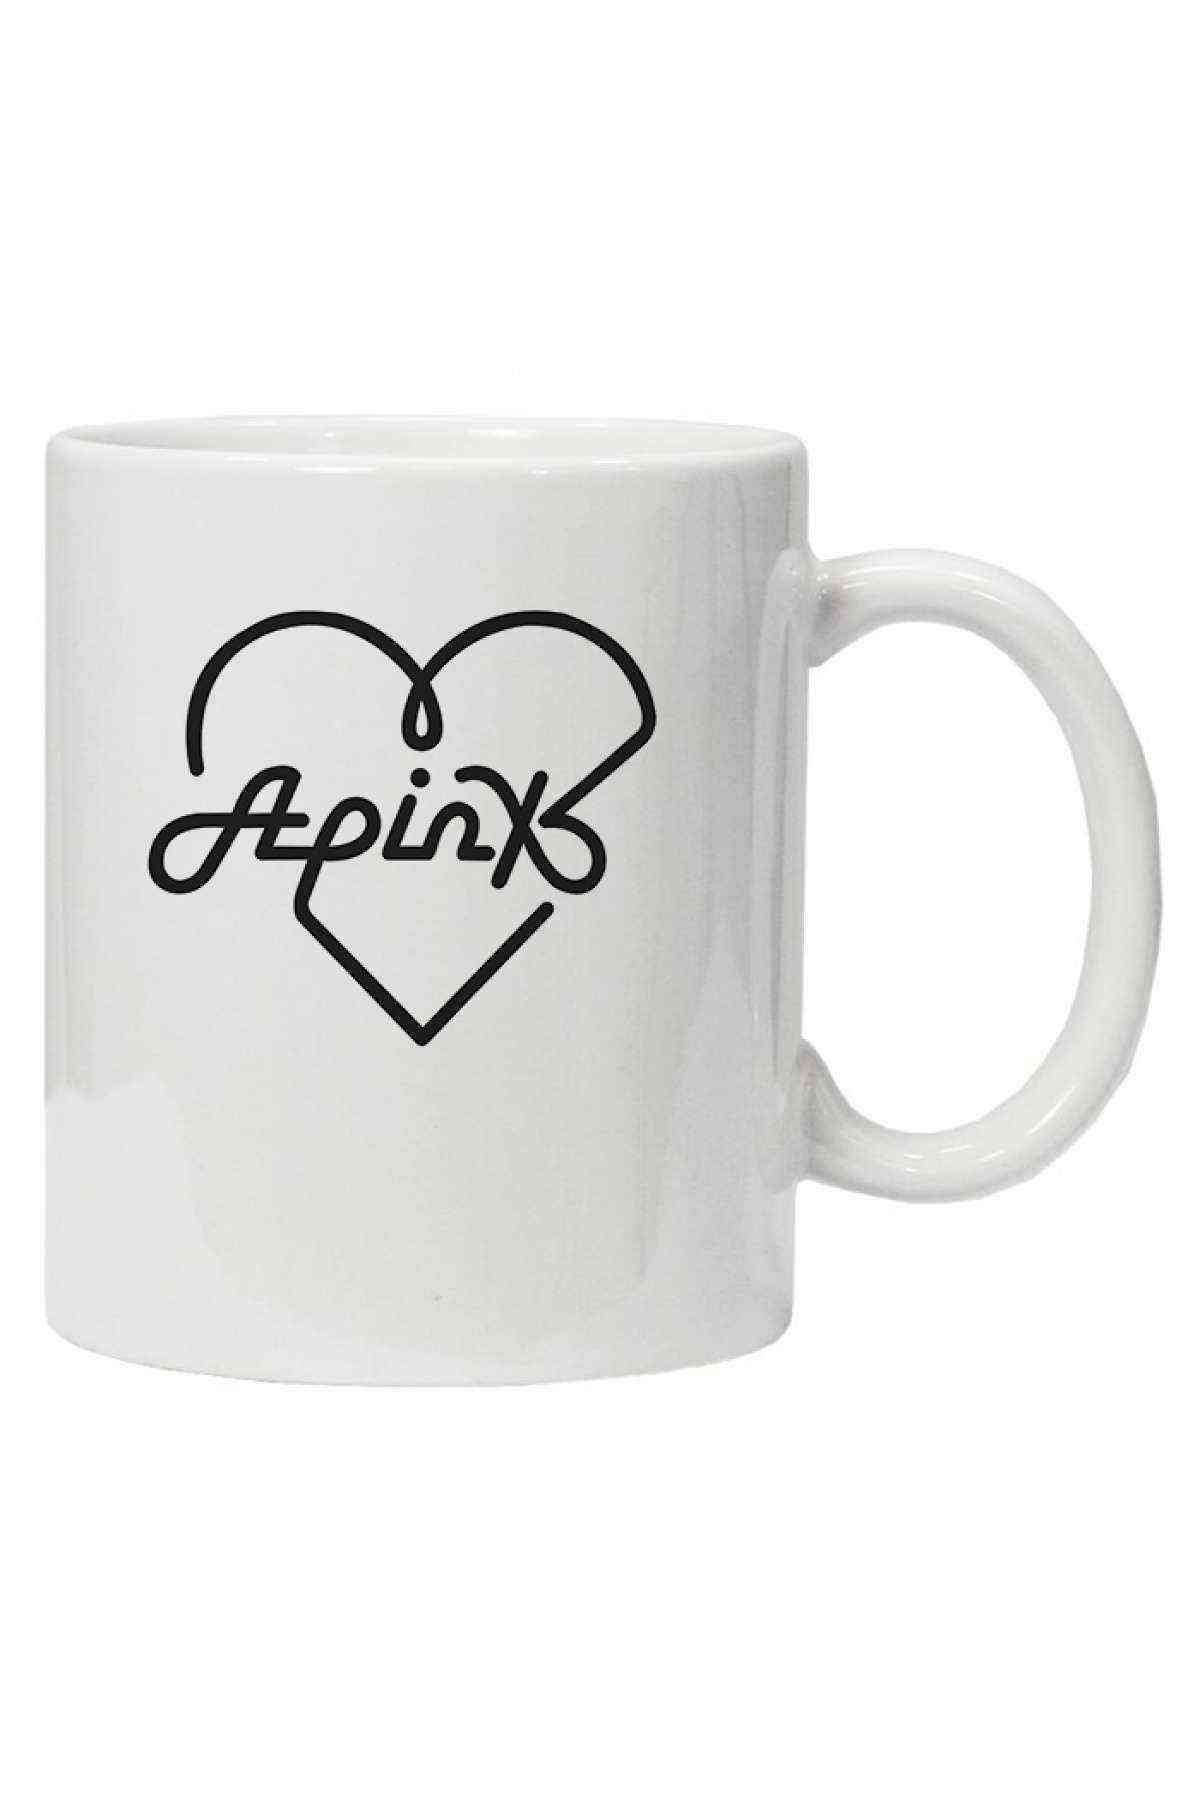 Kupa Bardak Apinx Logosu K Pop Korece Idol Kpop